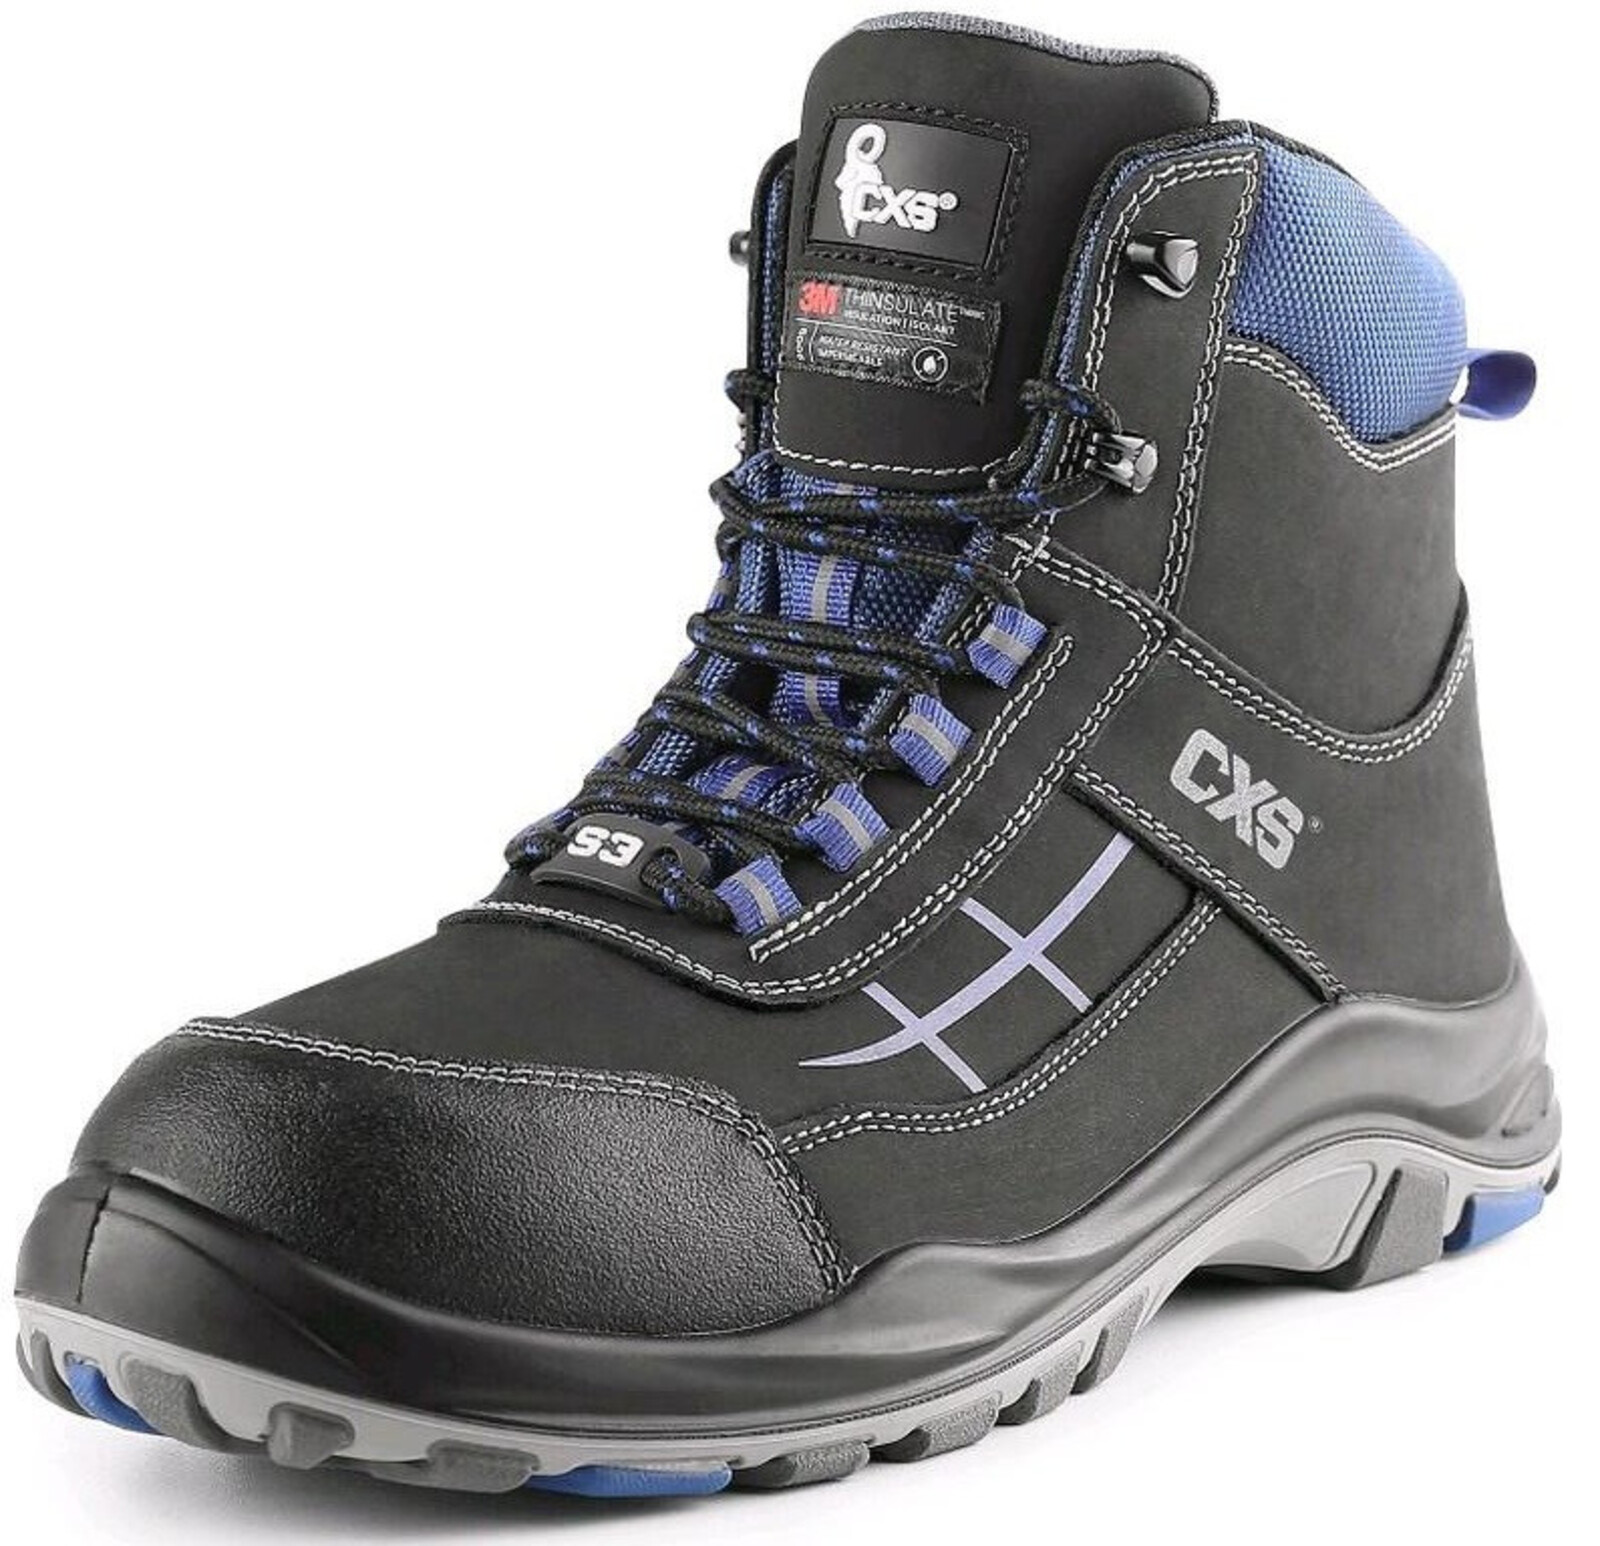 Zateplená bezpečnostná členková obuv CXS Dog Malamute S3 CI SRC - veľkosť: 38, farba: čierna/modrá